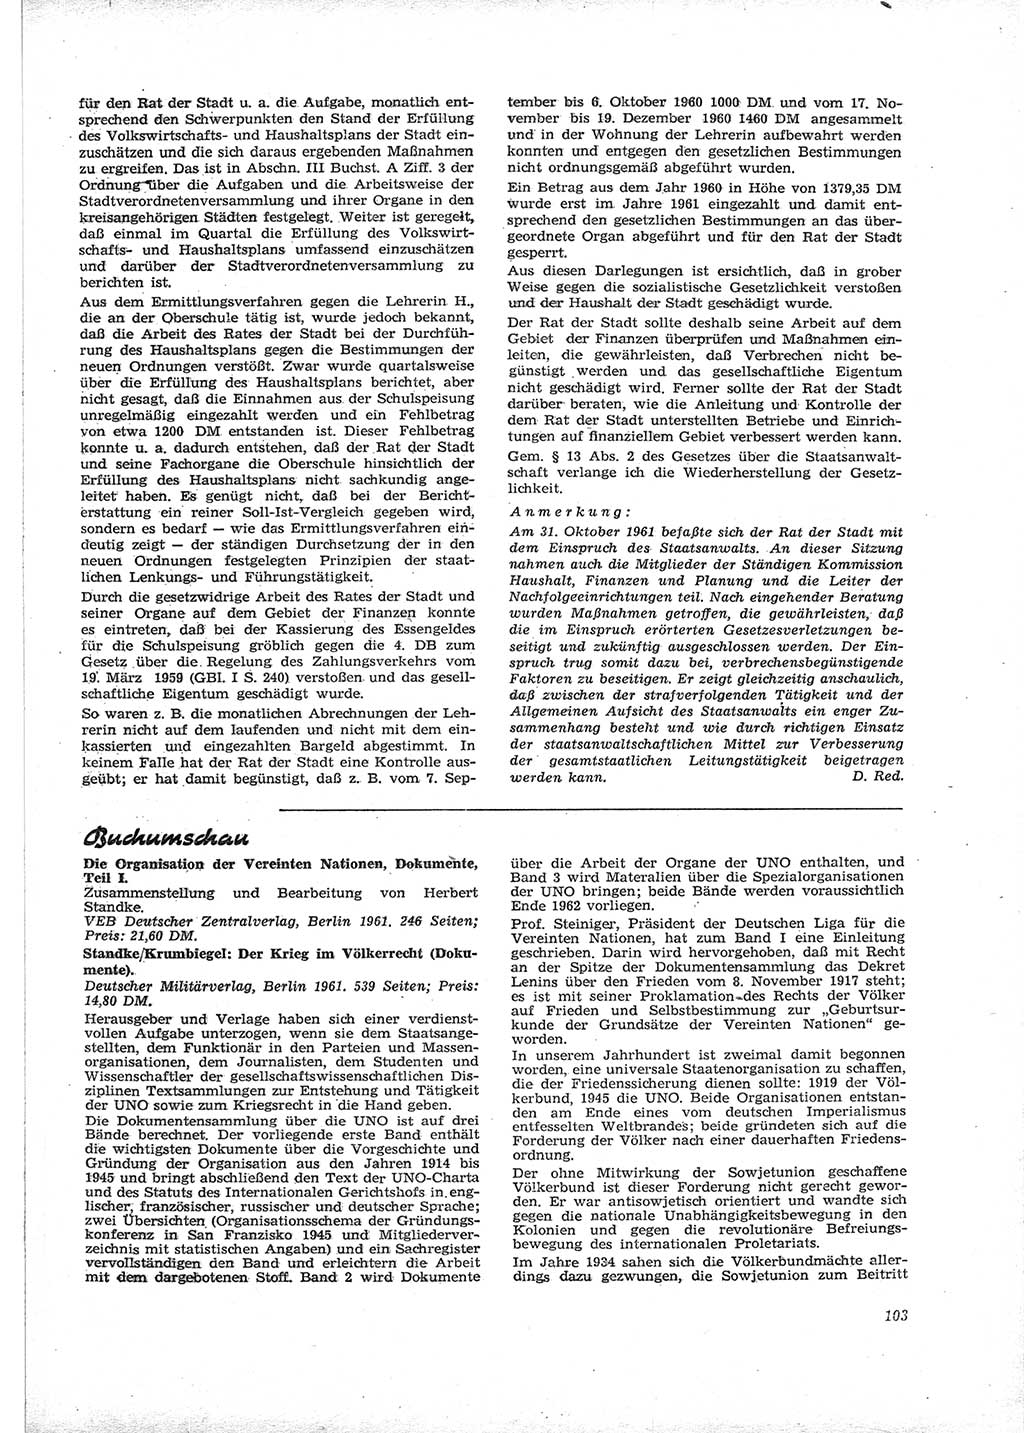 Neue Justiz (NJ), Zeitschrift für Recht und Rechtswissenschaft [Deutsche Demokratische Republik (DDR)], 16. Jahrgang 1962, Seite 103 (NJ DDR 1962, S. 103)